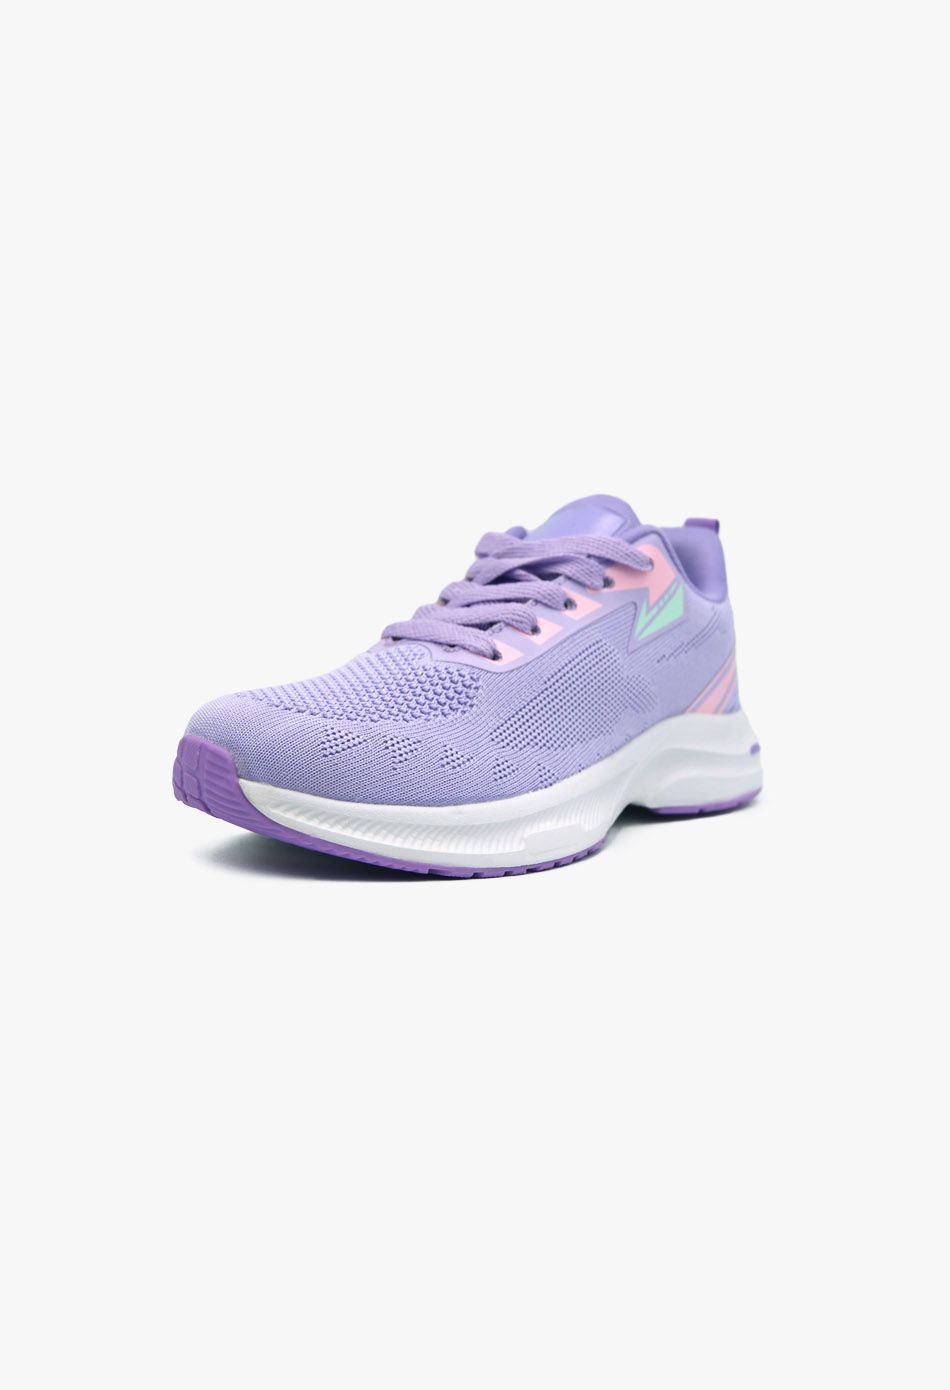 Γυναικεία Sneakers Μωβ / B-41-purple Γυναικεία Αθλητικά και Sneakers joya.gr